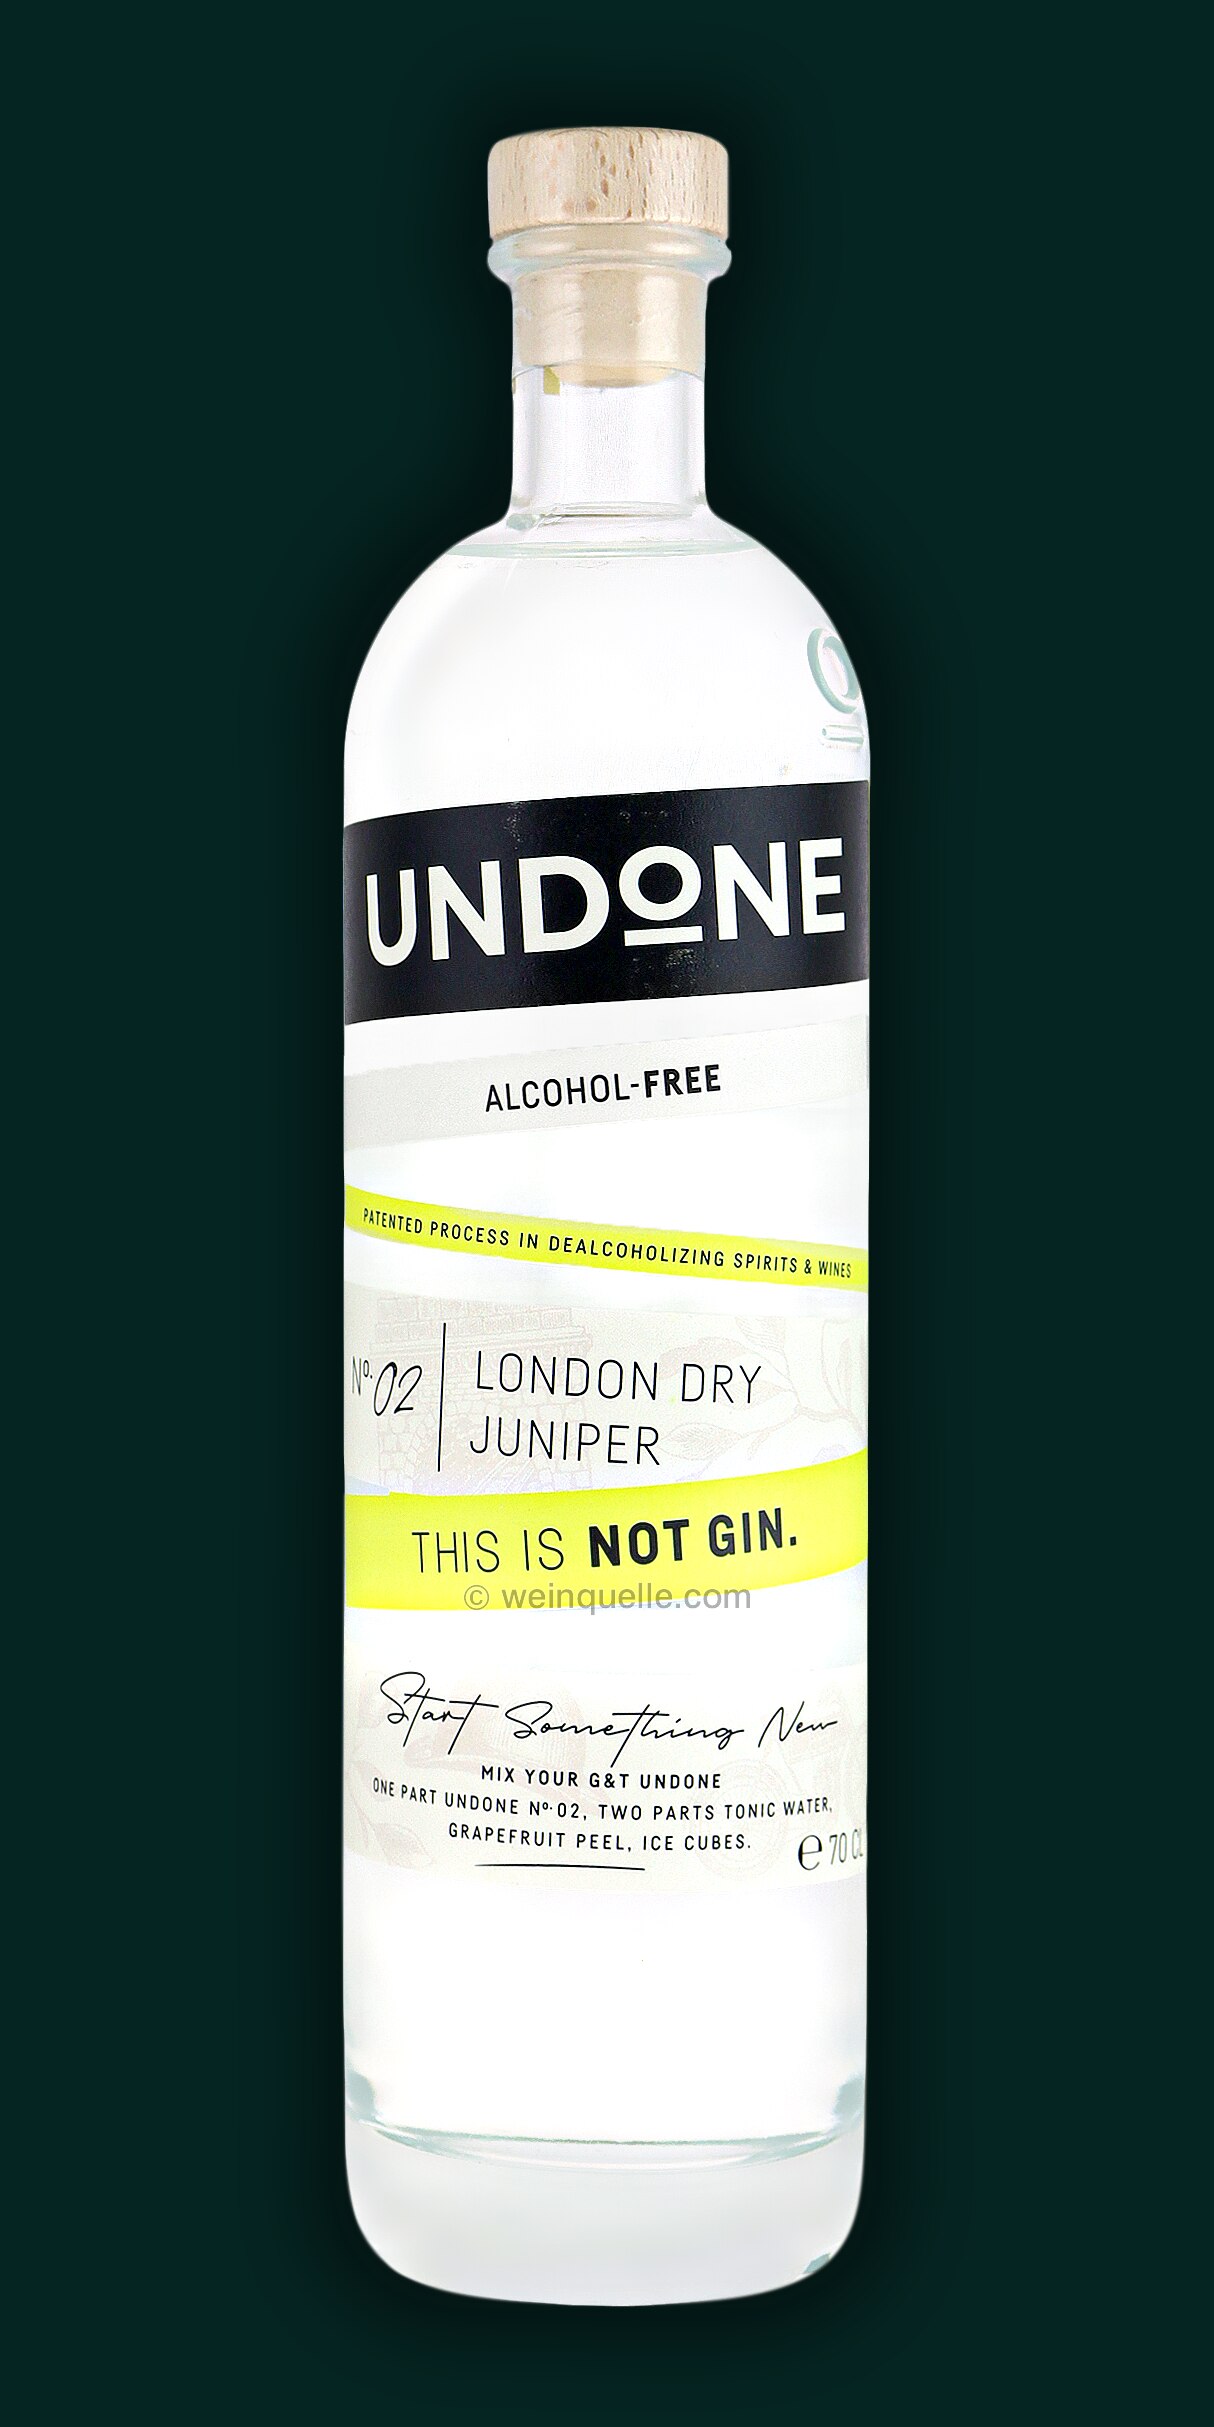 Undone No. 2 London Dry Juniper Type - Not Gin, 19,90 € - Weinquelle Lühmann